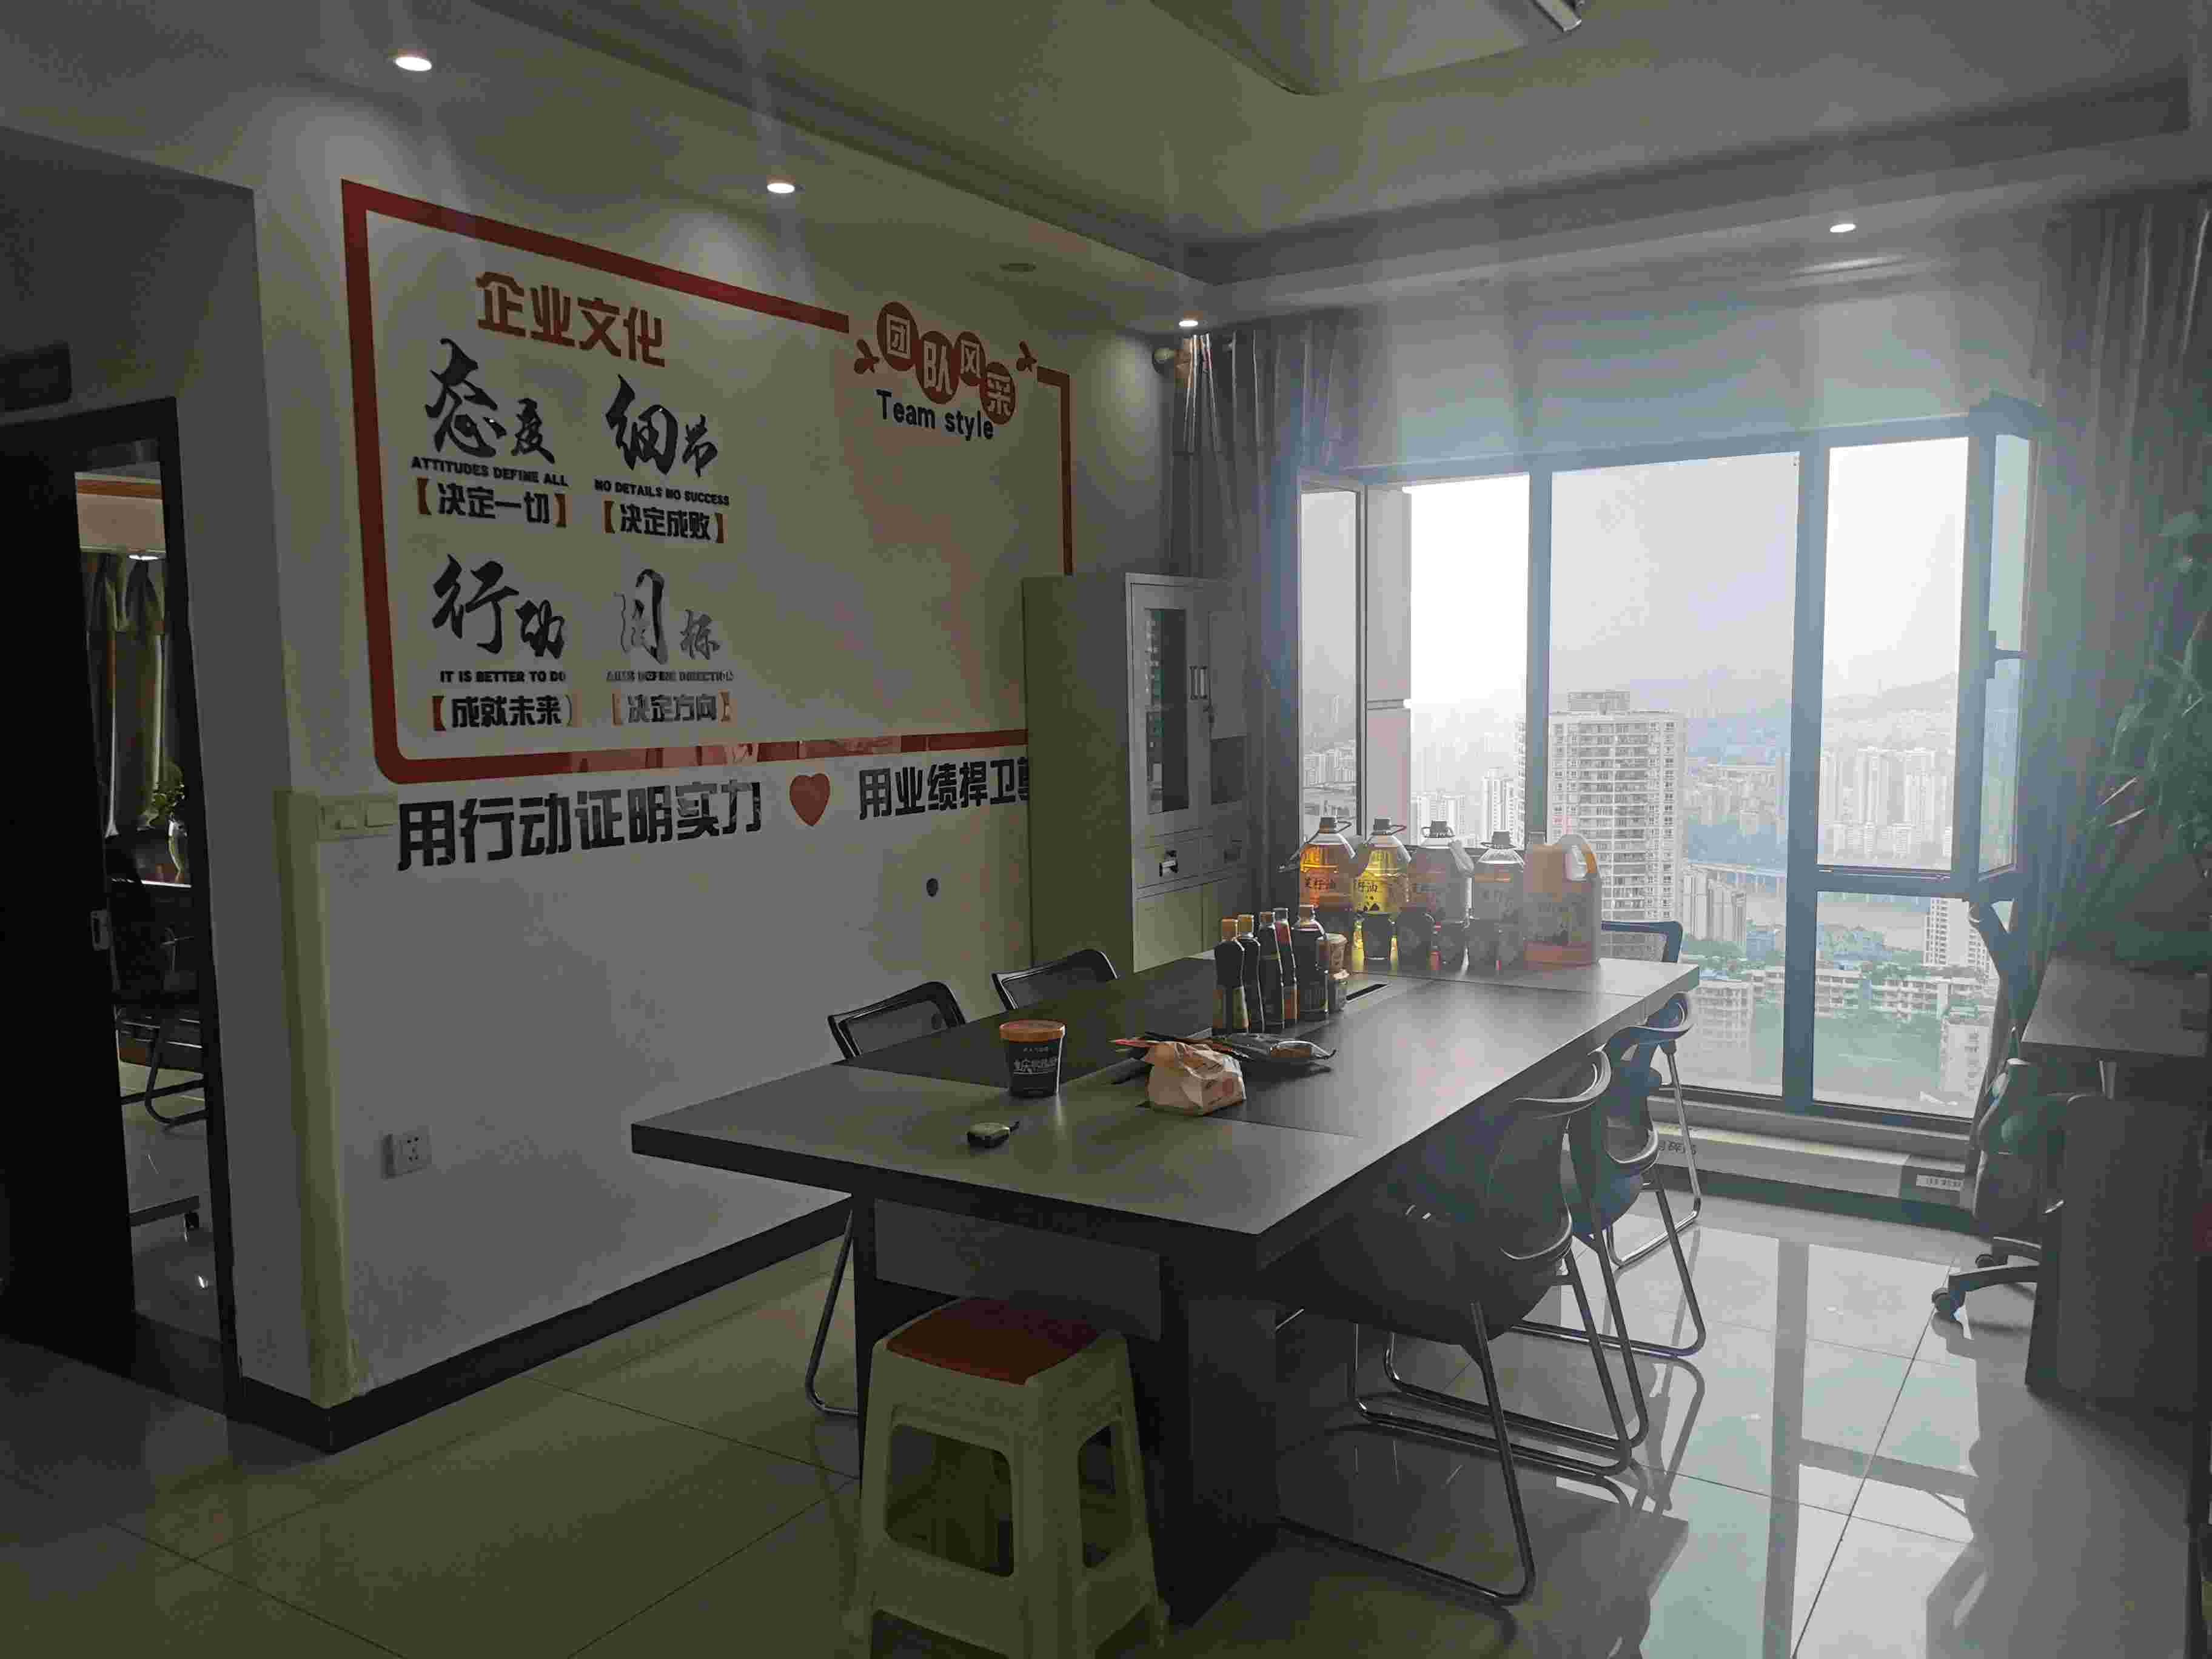 重庆辉畅商贸有限公司 环境照片活动图片